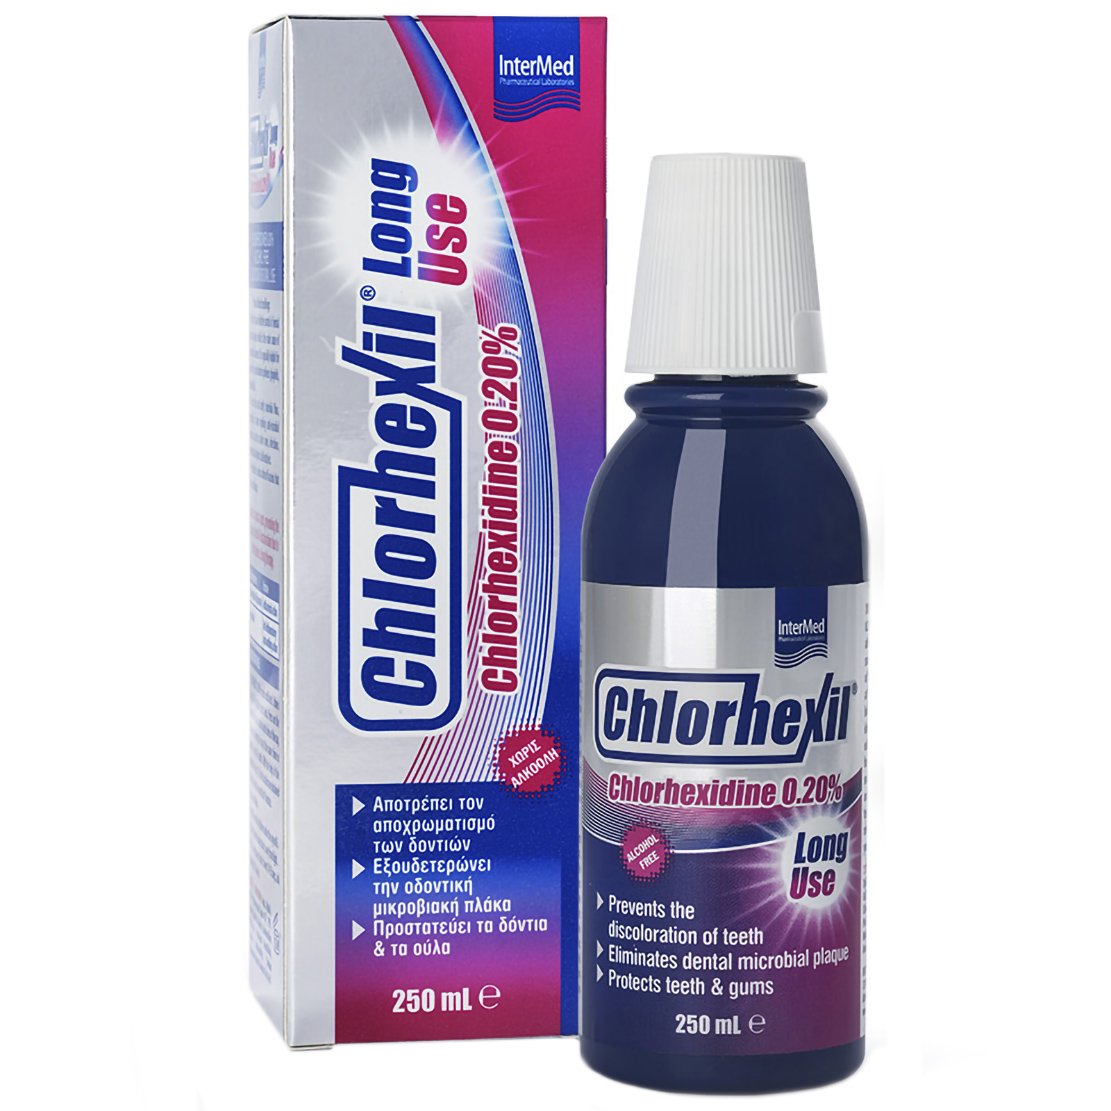 Intermed Chlorhexil 0.20% Mouthwash Long Use Στοματικό Διάλυμα για Ολοκληρωμένη Στοματική Προστασία σε Δόντια & Ούλα 250ml